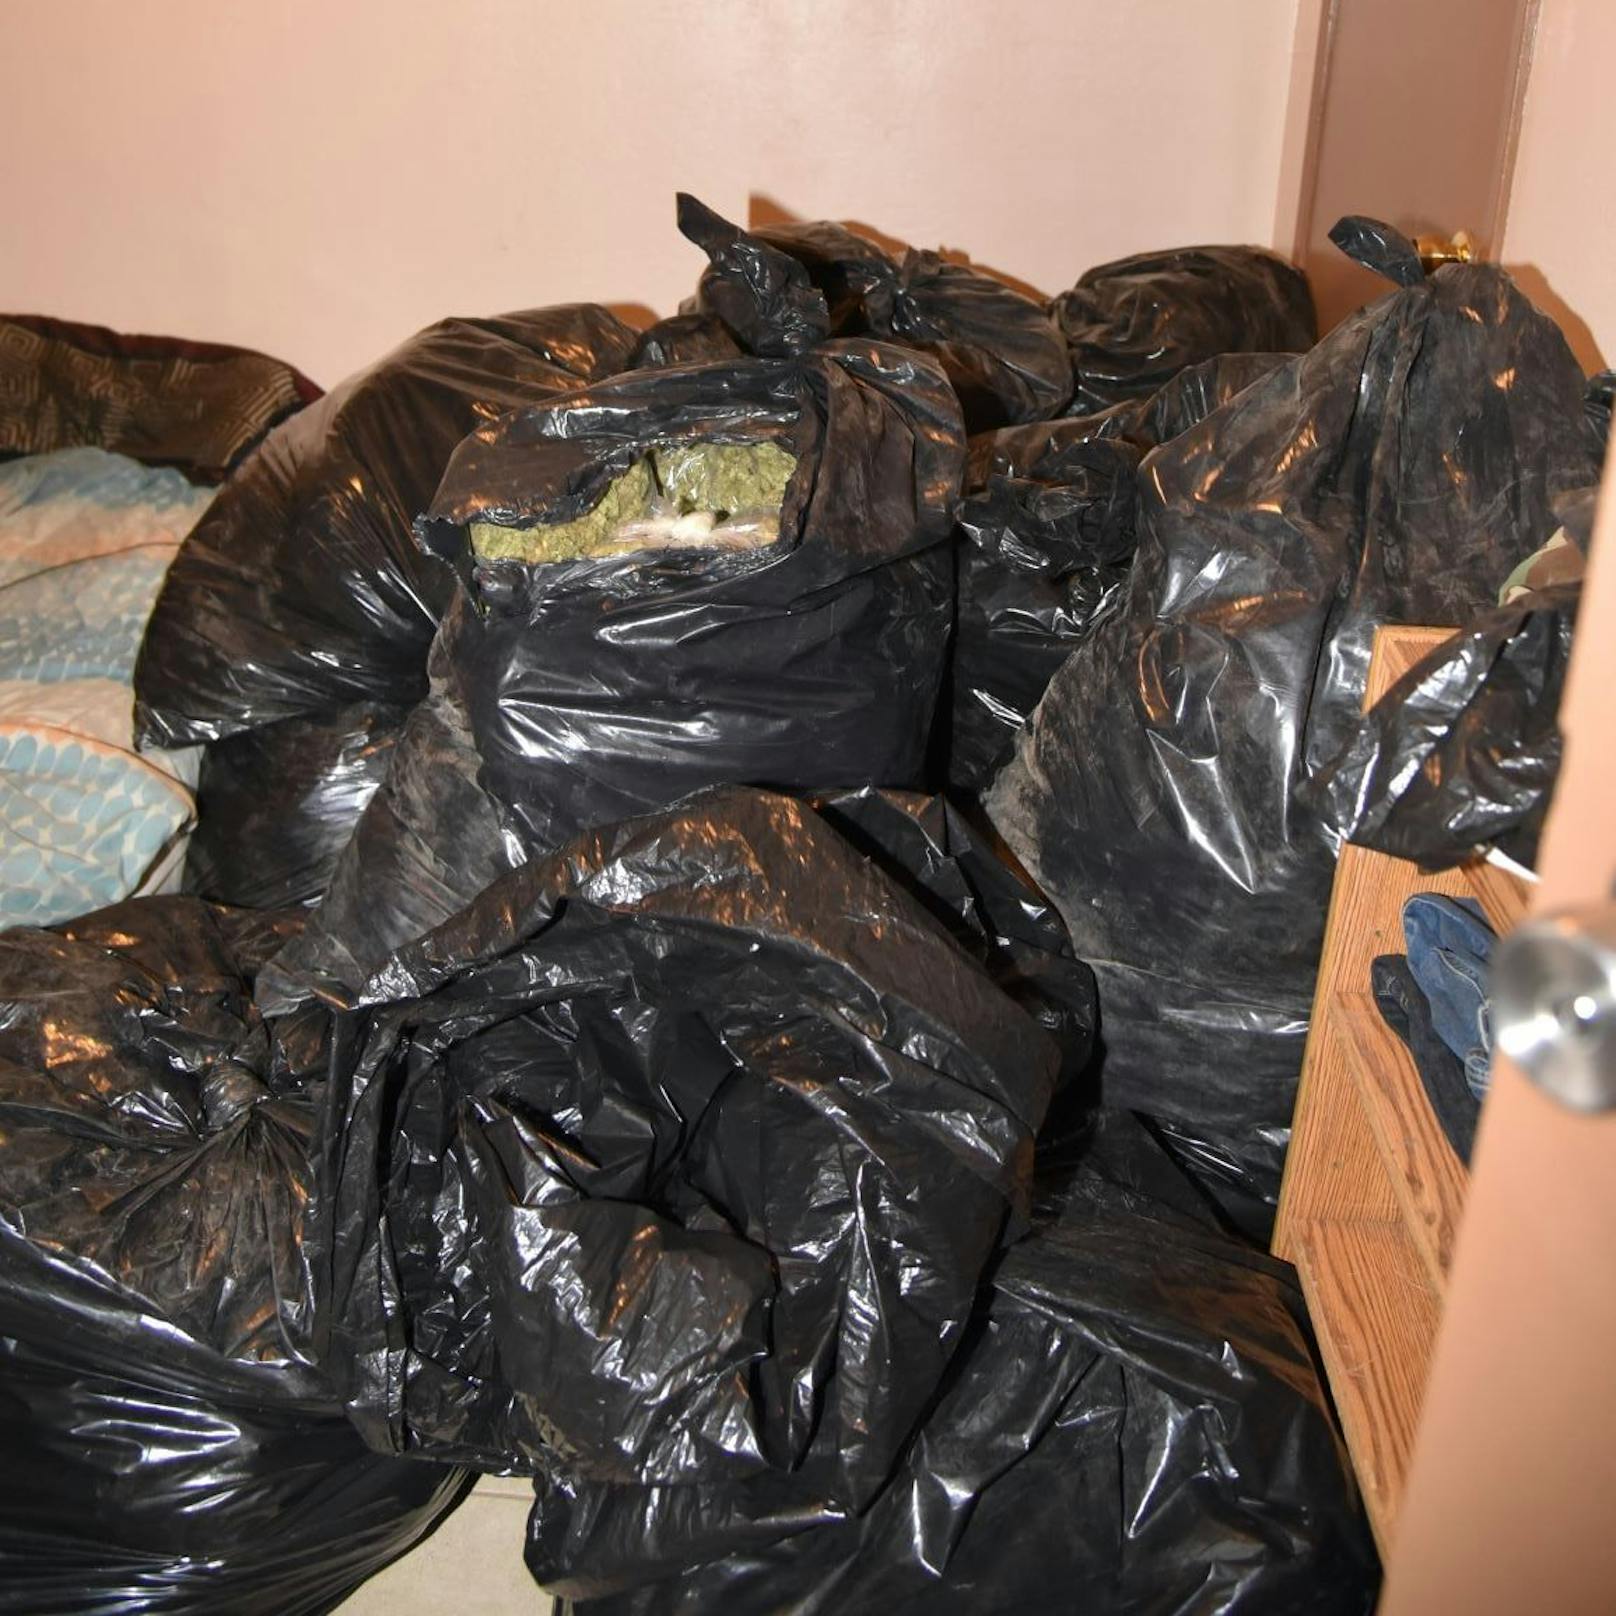 In der Wohnung stapelten sich Müllsäcke voller Marihuana. Insgesamt sollen mehr als 200 Kilo dort gelagert worden sein.